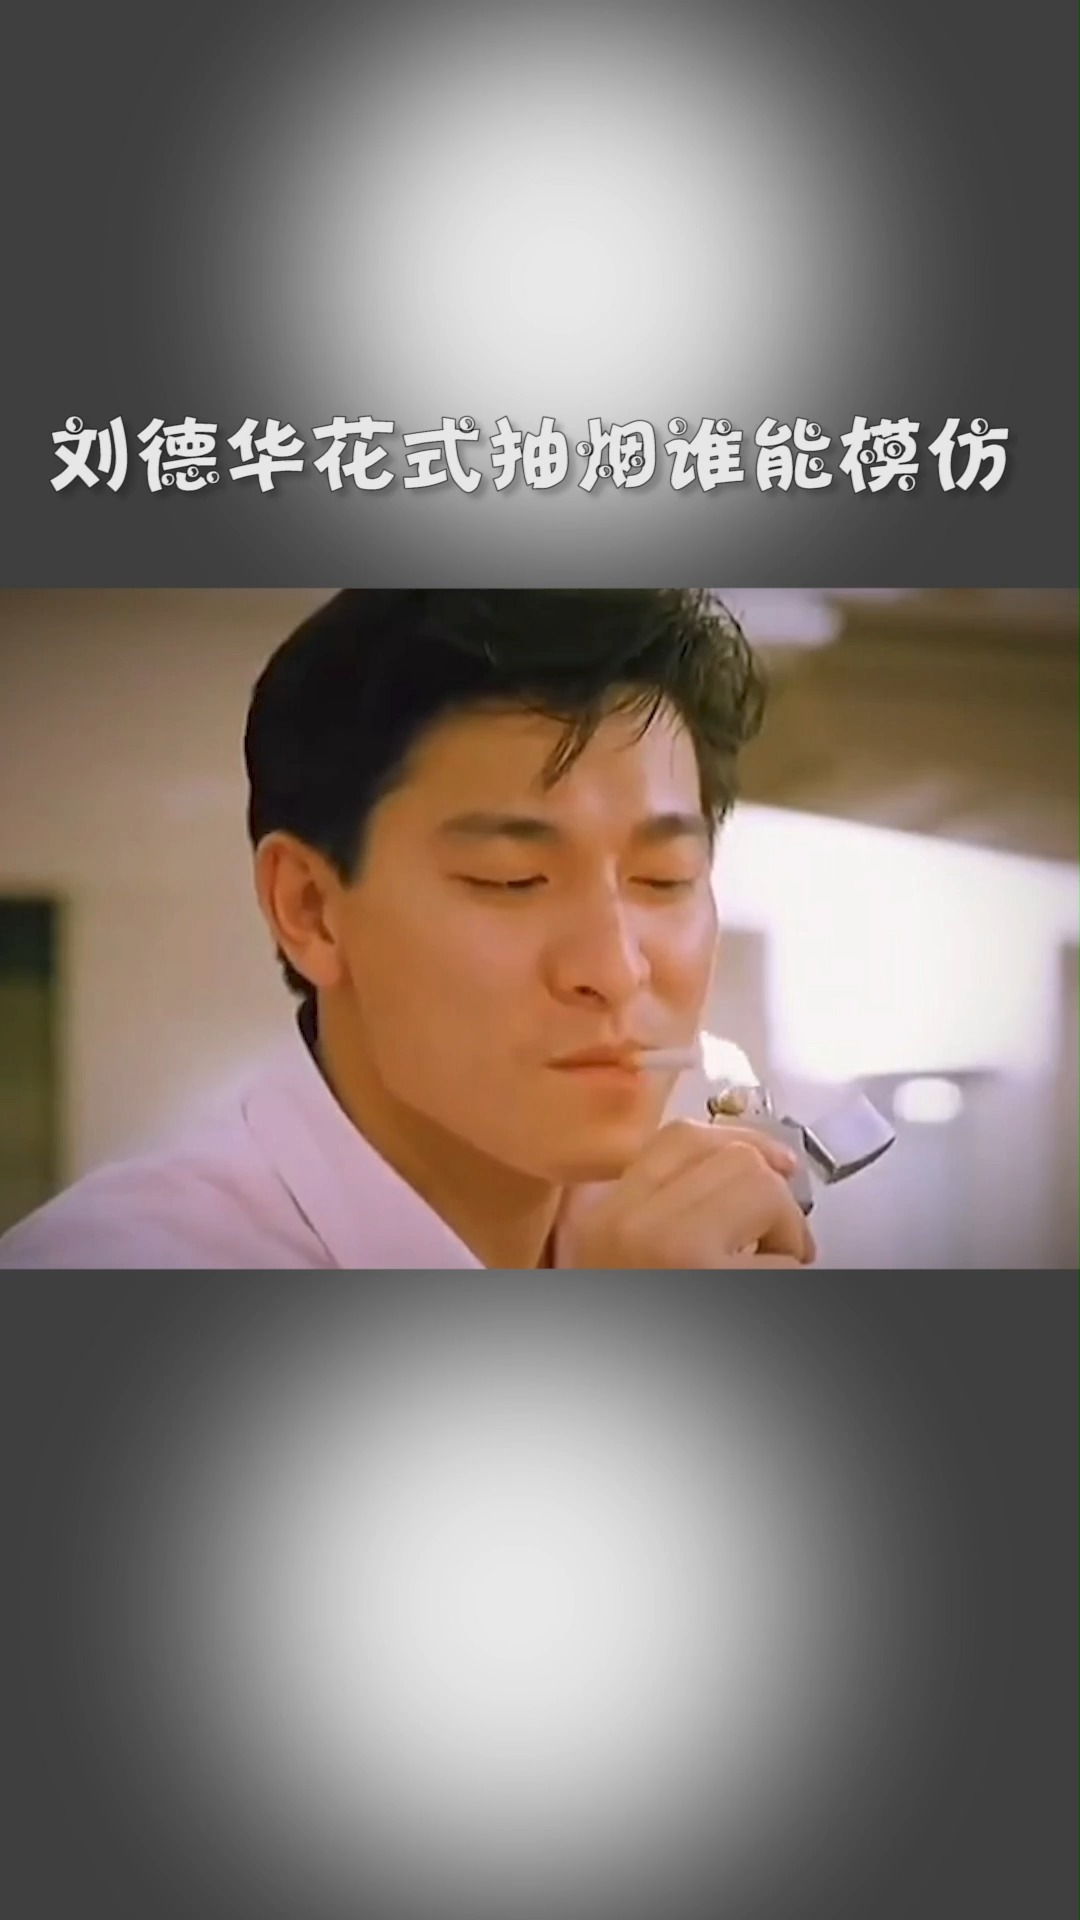 刘德华#刘德华的花式抽烟,看的懂学不会系列!